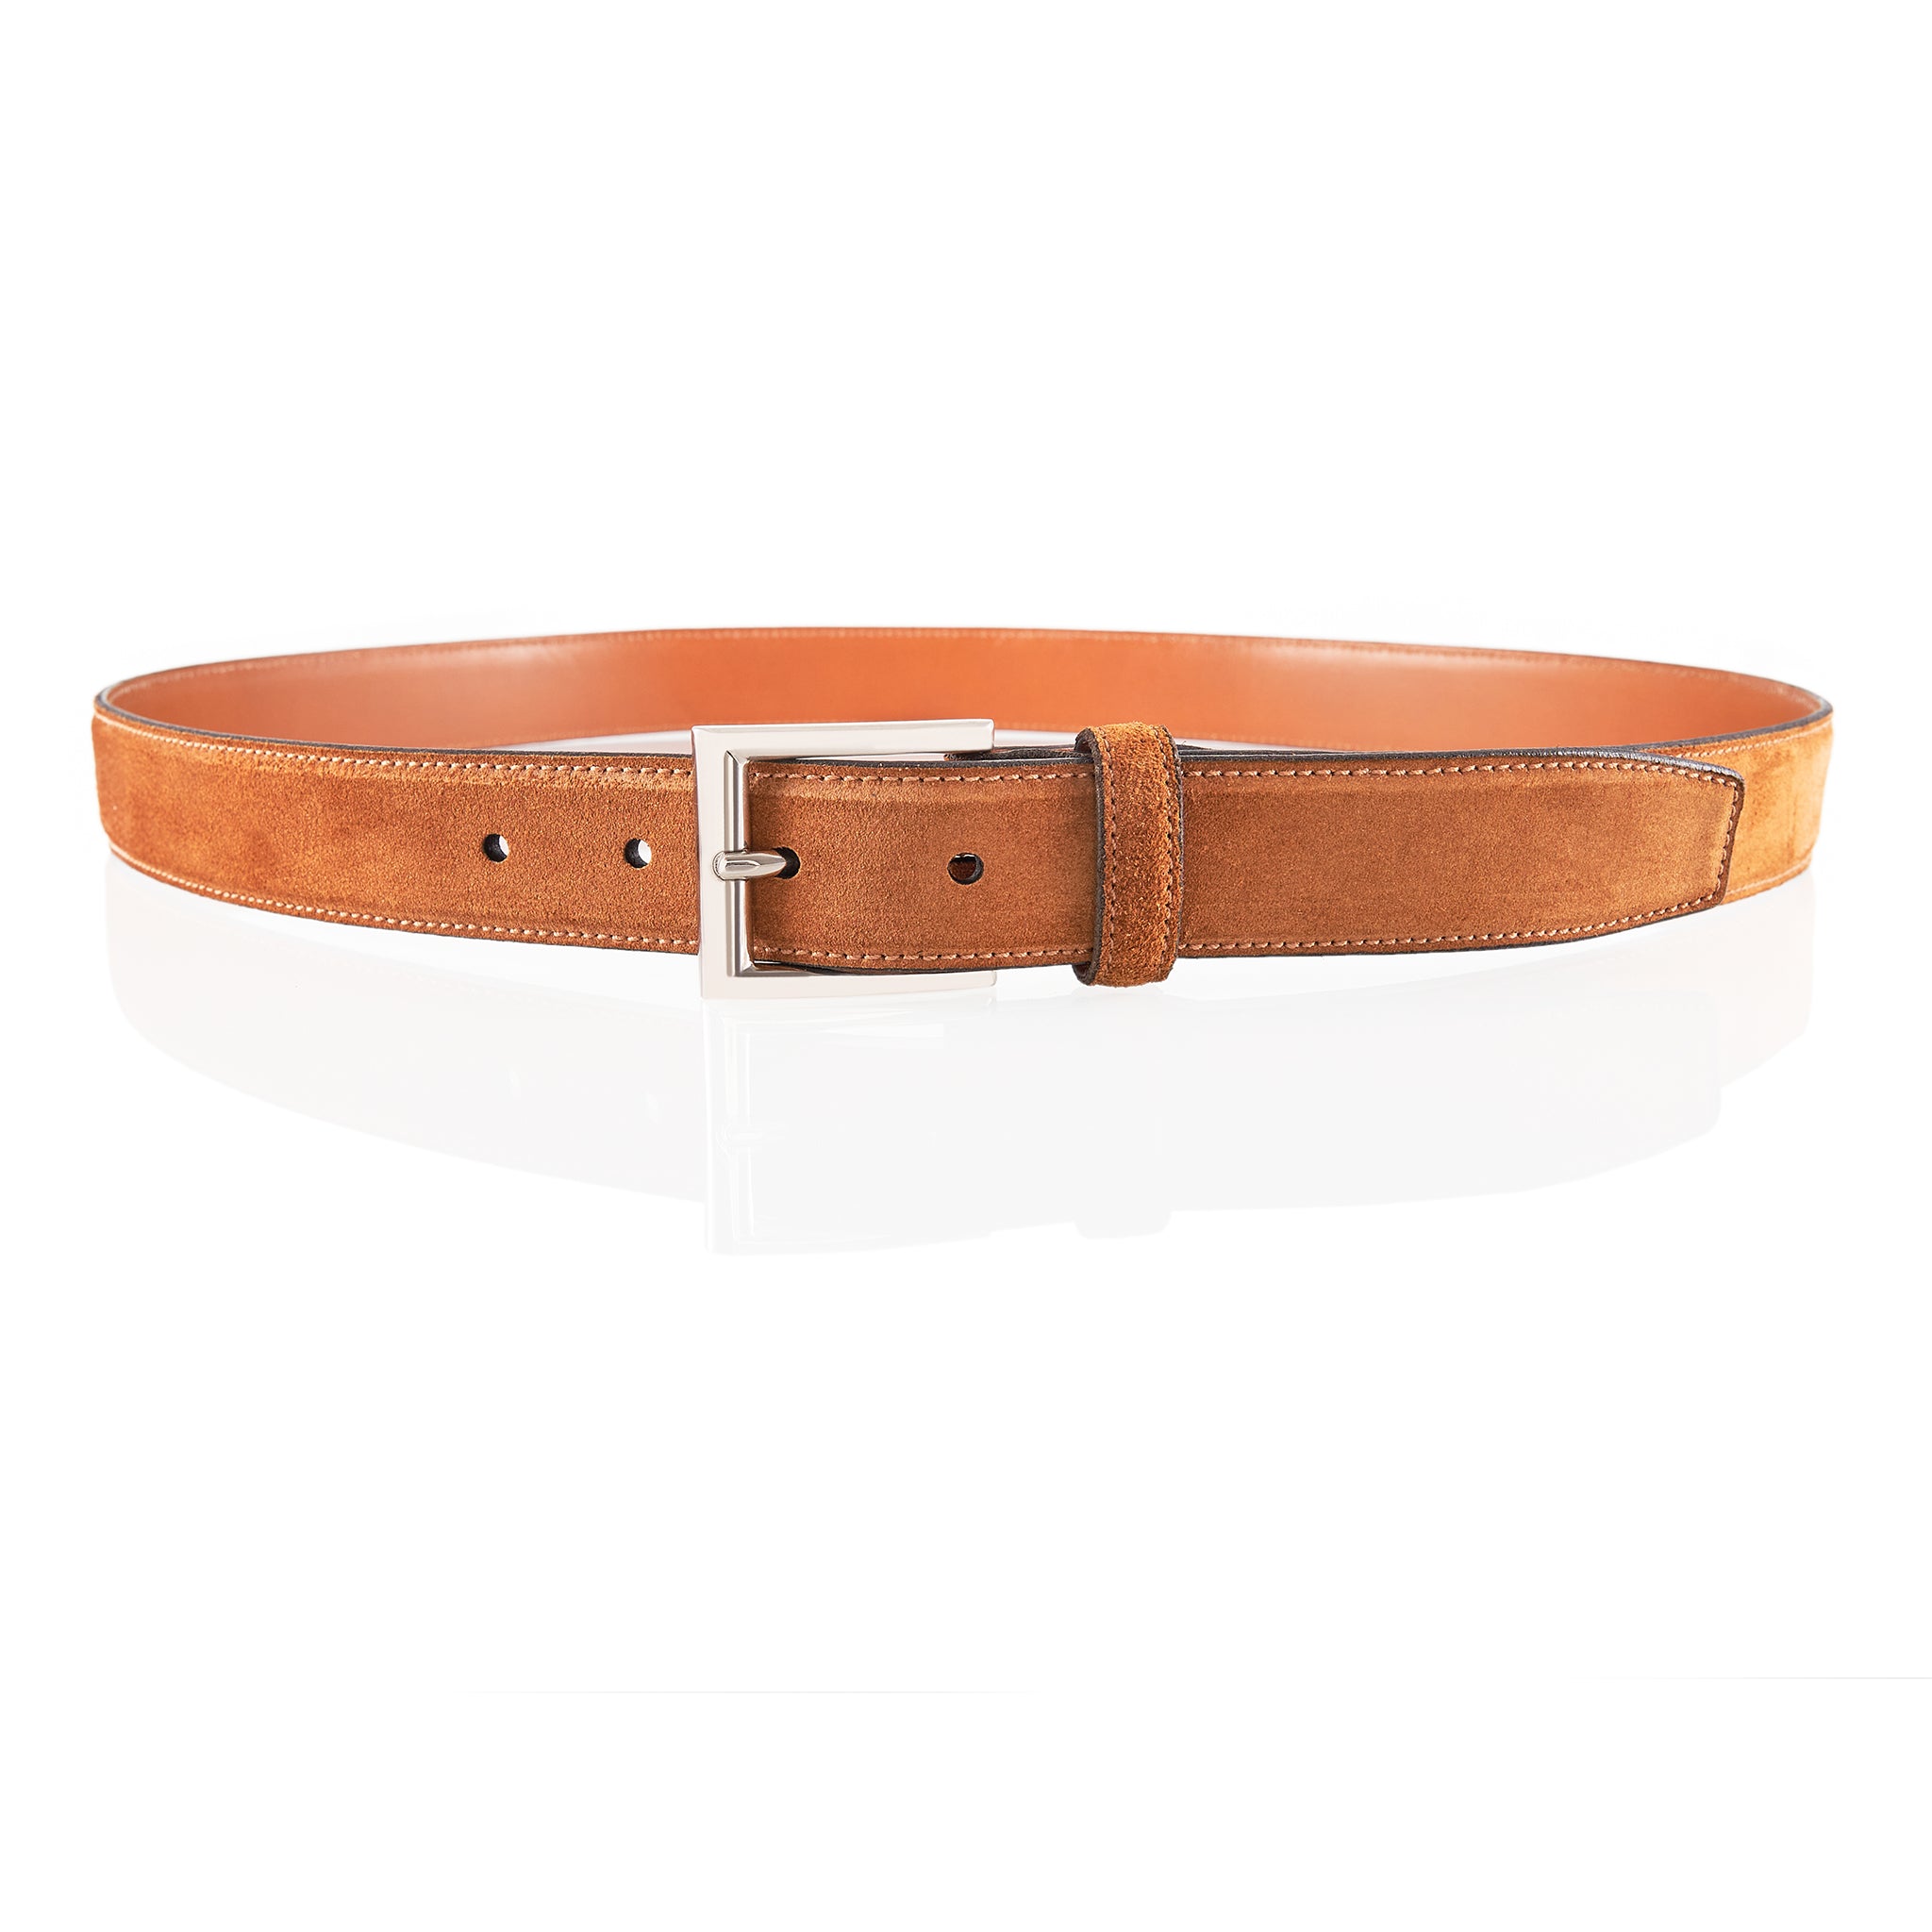 TLB Mallorca | Men's leather belts | Men's belt collection | Nothwest ...